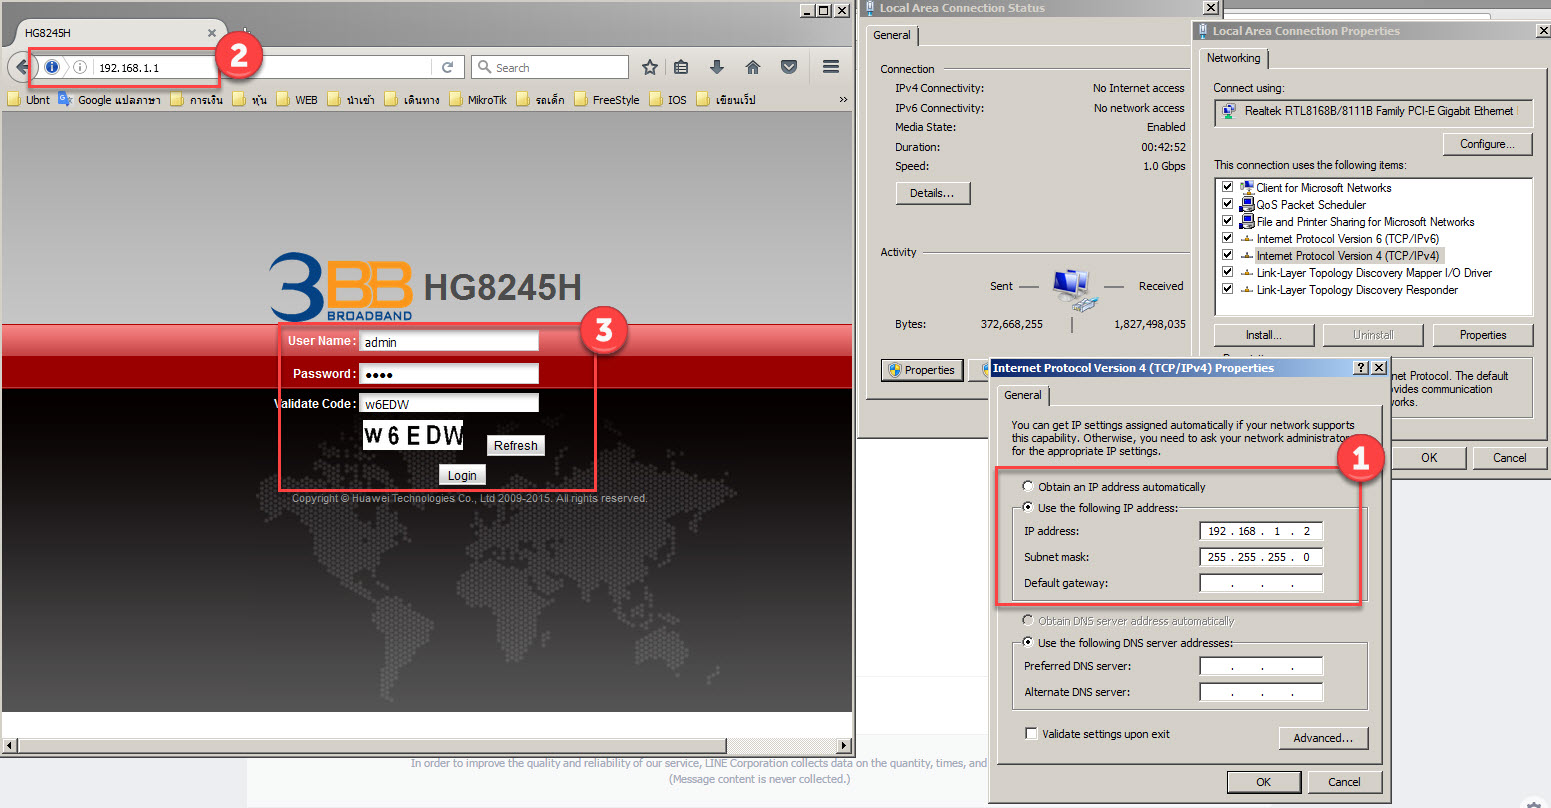 พื้นฐาน : คู่มือการตั้งค่า Bridge Mode ของอุปกรณ์ 3Bb Gpon Onu รุ่น Hg8245H  - ซิสทูยู ออนไลน์ Xpert Zone